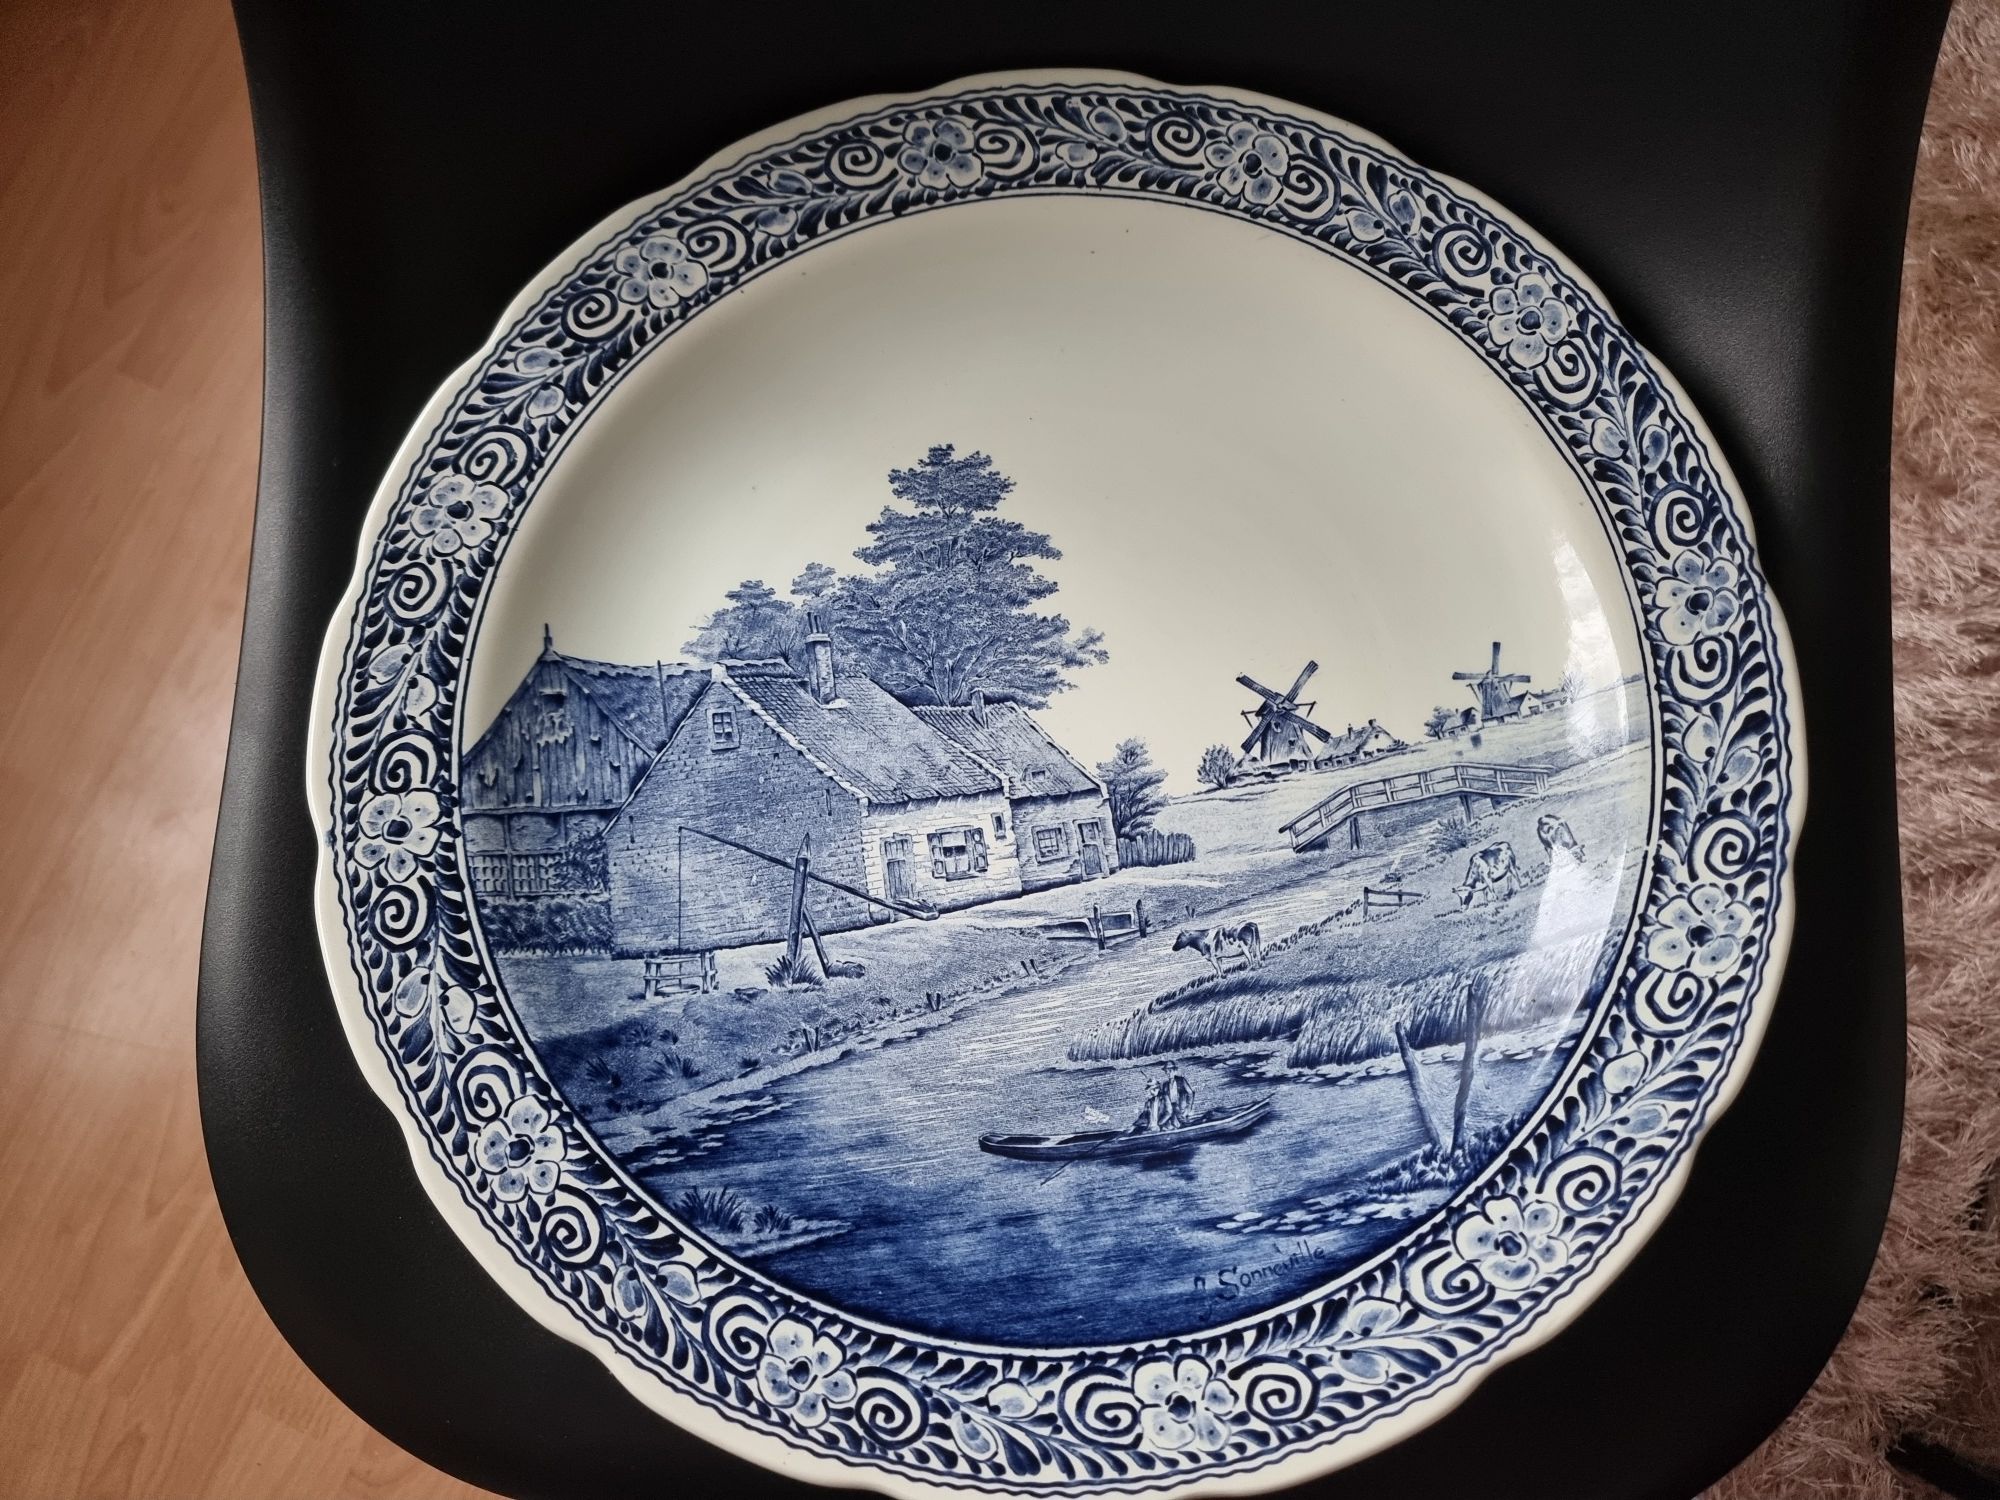 Boh Delfts Belgium zabytkowy talerz ceramiczny 
ręcznie malowany szkli